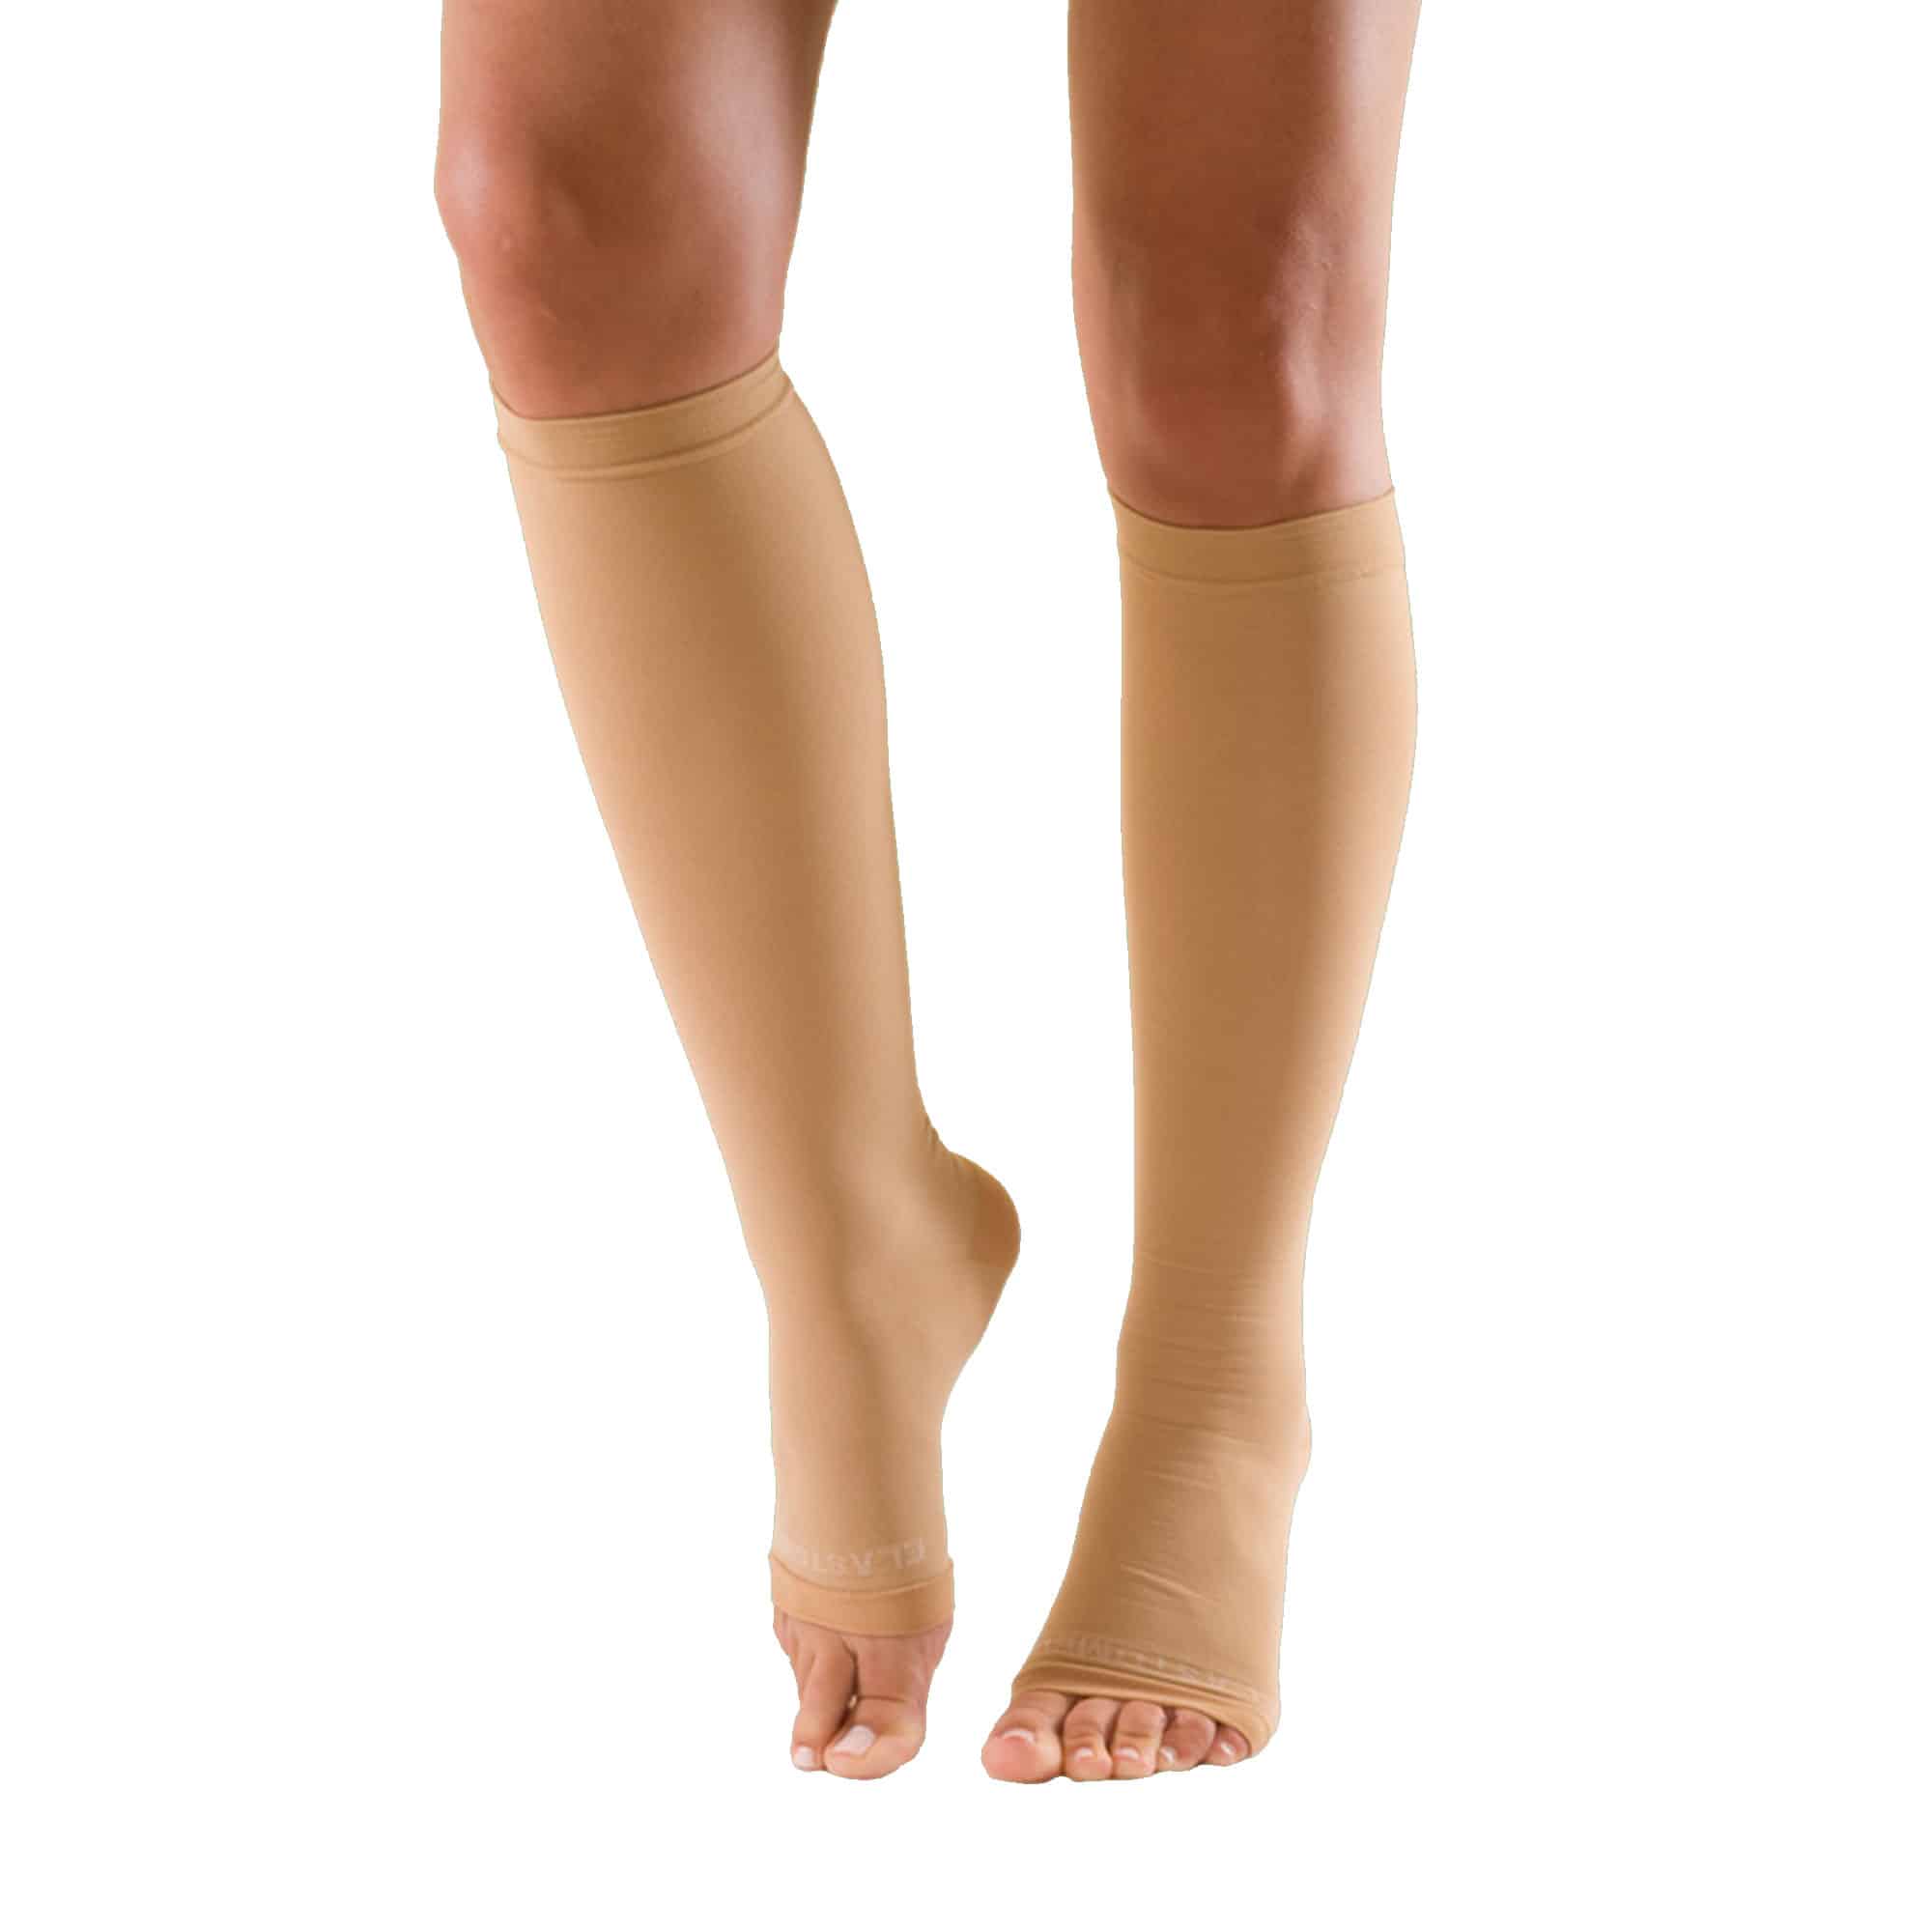 Ciorapii antitrombotici dupa operatie – beneficii si cat timp purtam ciorapii?